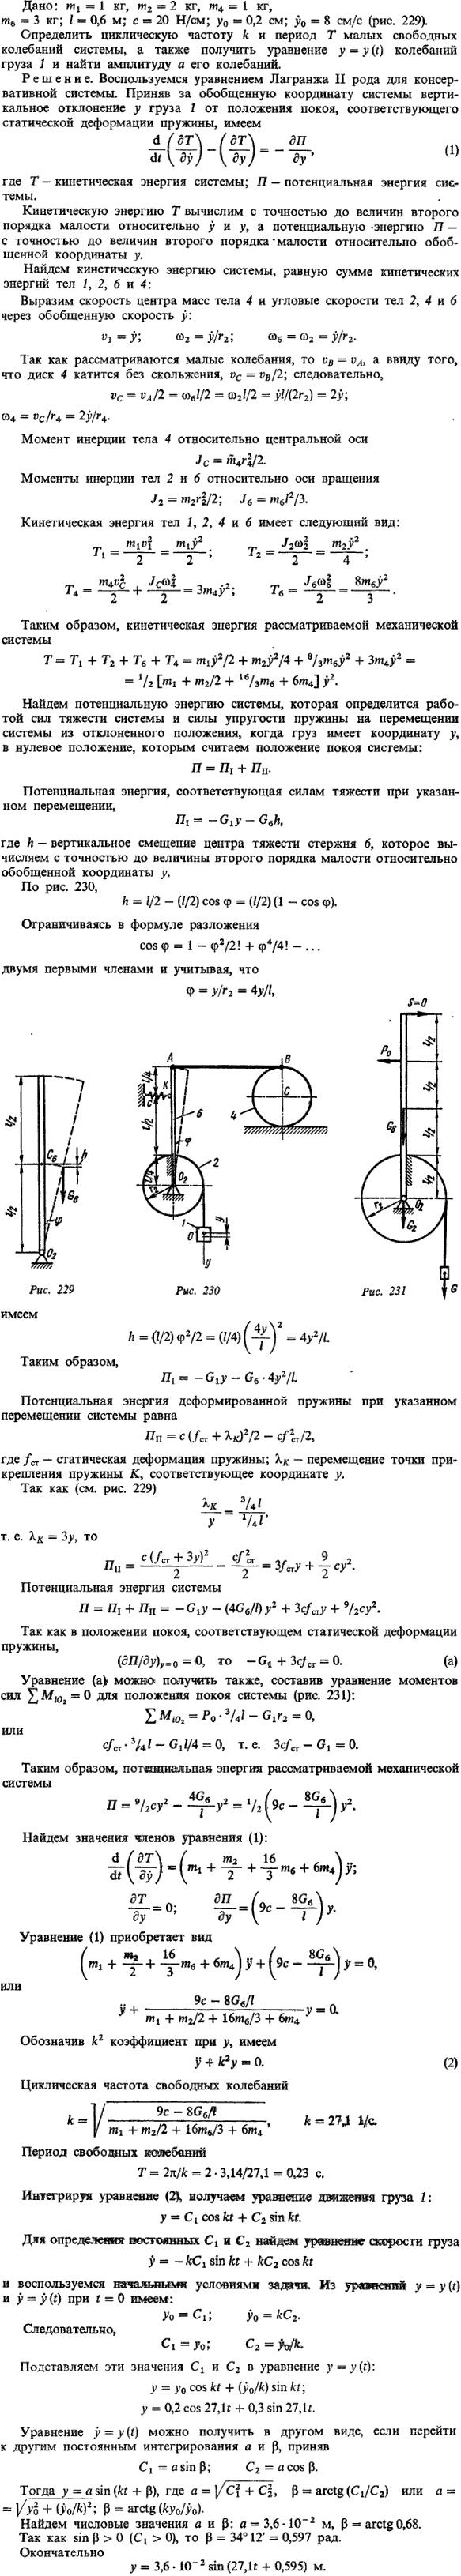 Определить циклическую частоту и период малых свободных колебаний системы, а также получить уравнение y = y(t) колебаний груза ..., Задача 15283, Теоретическая механика